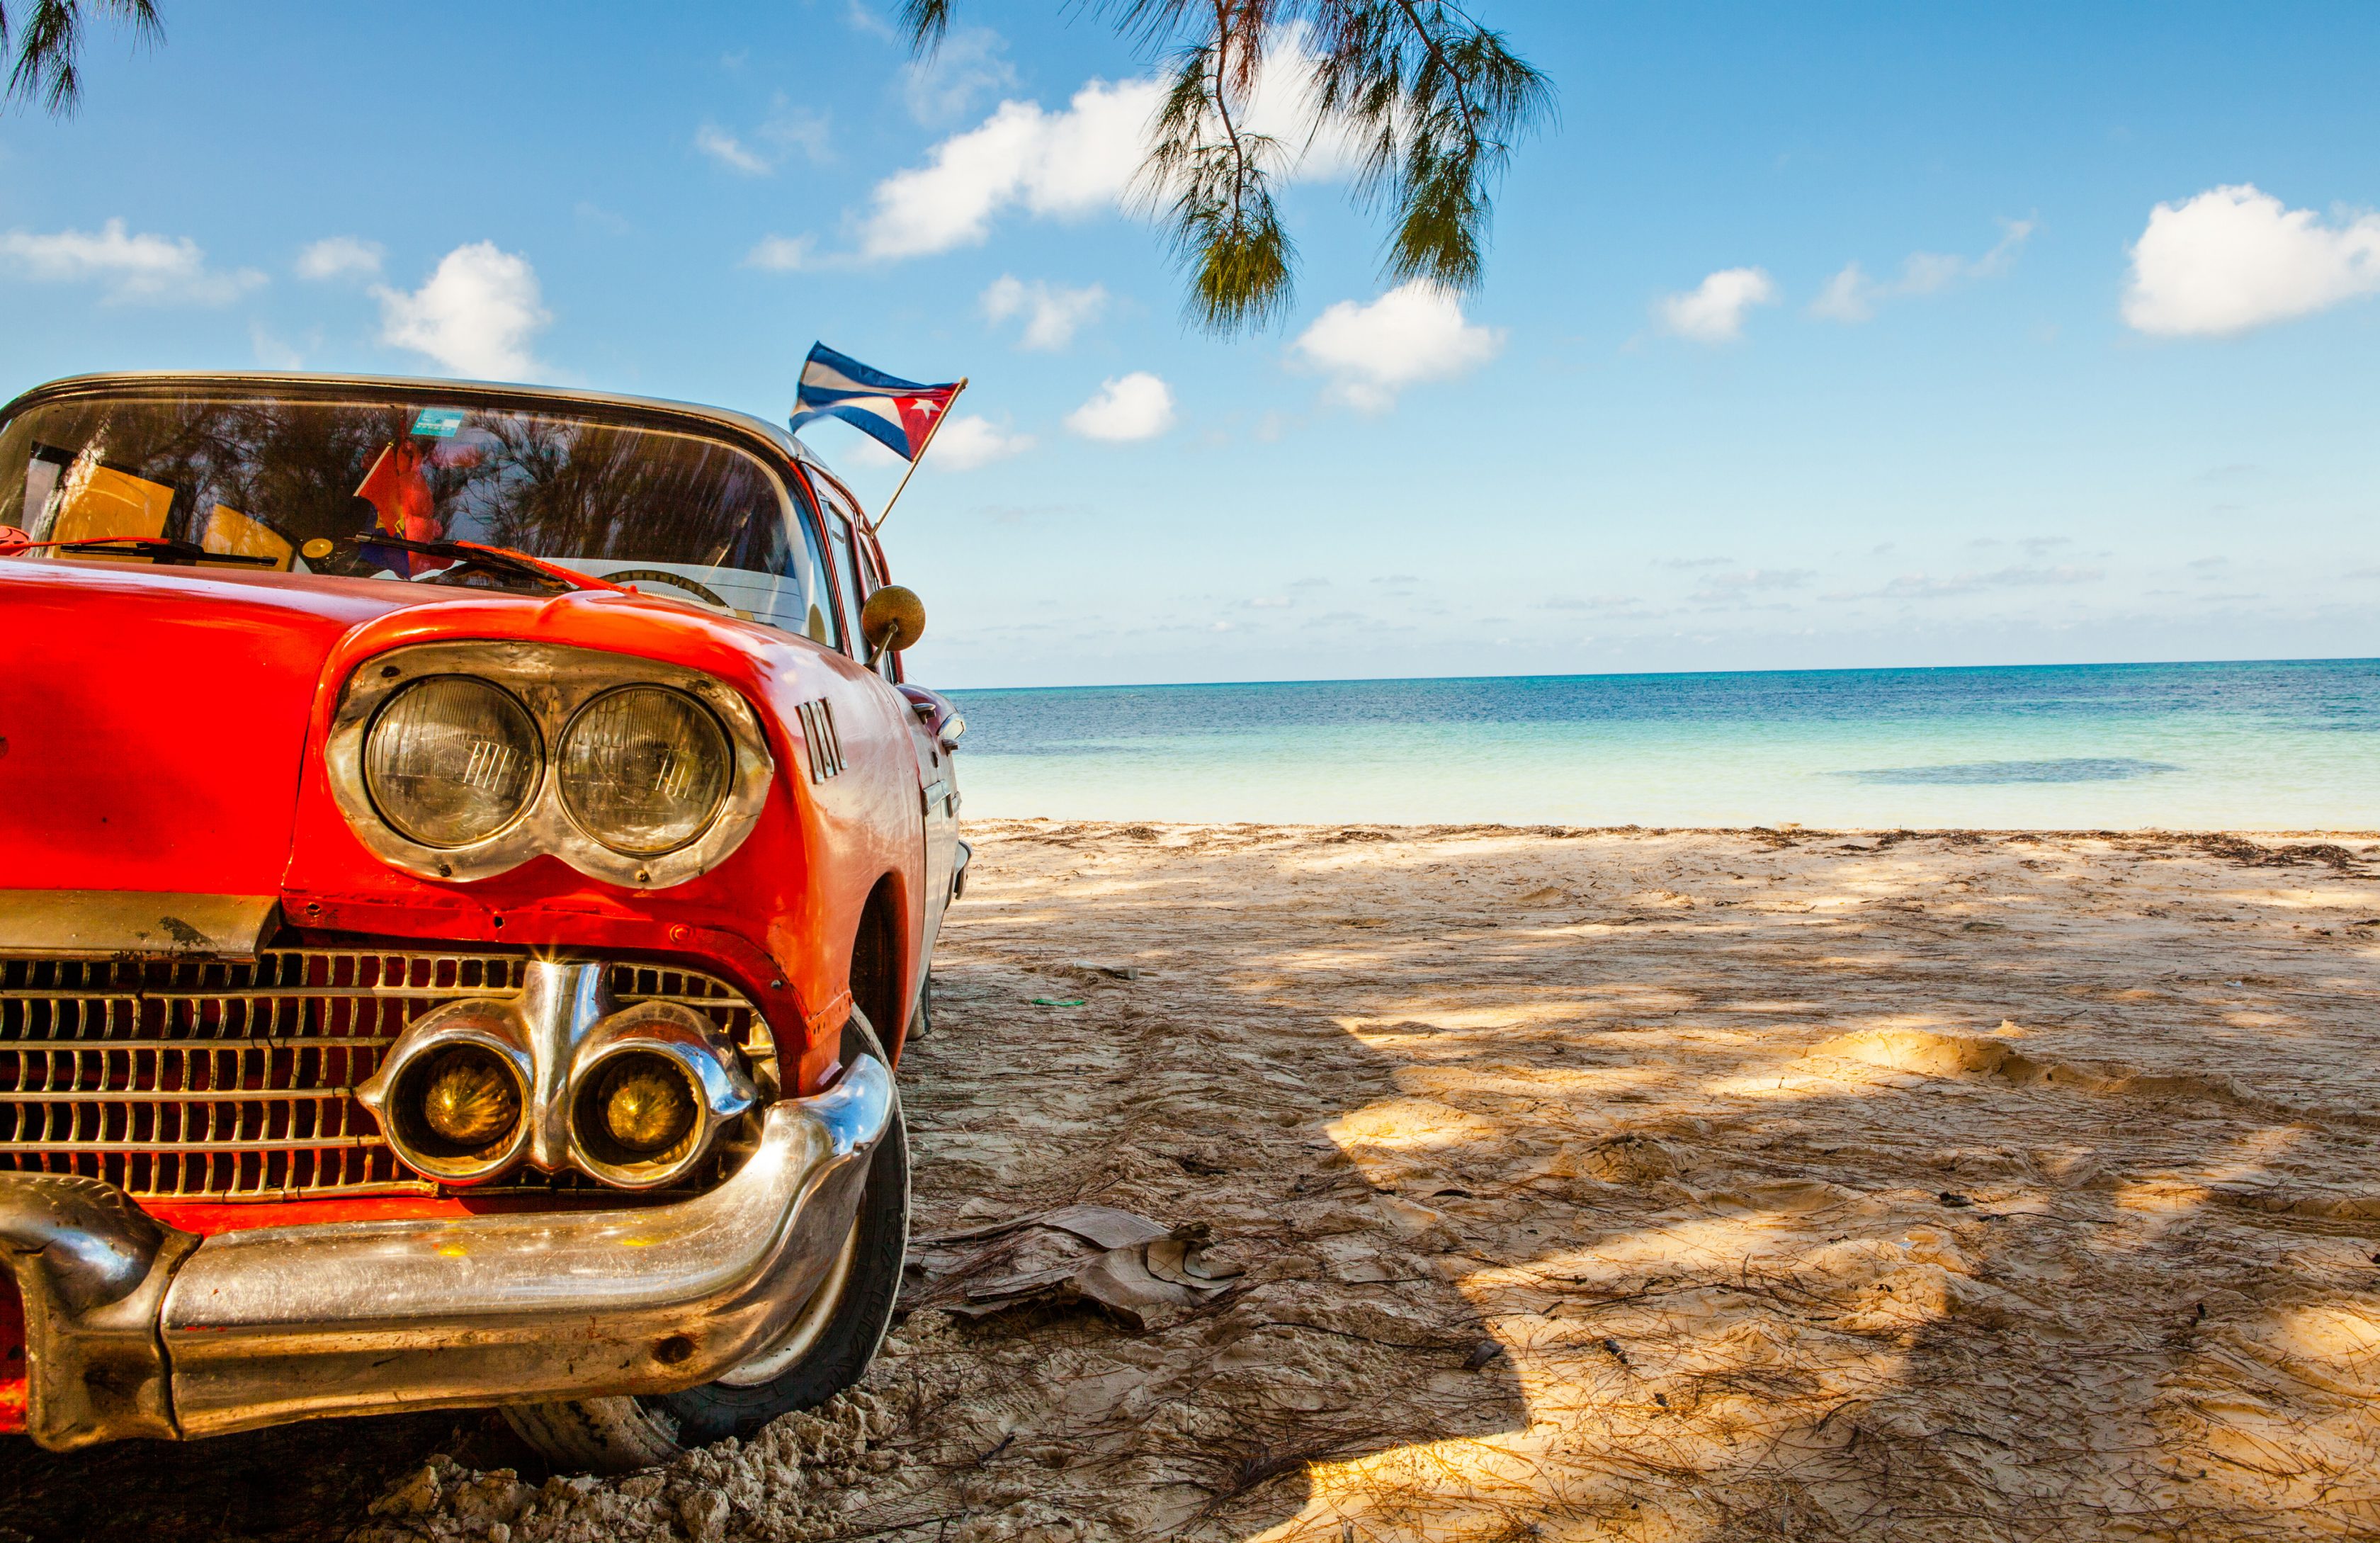 A Cuban car on the beach